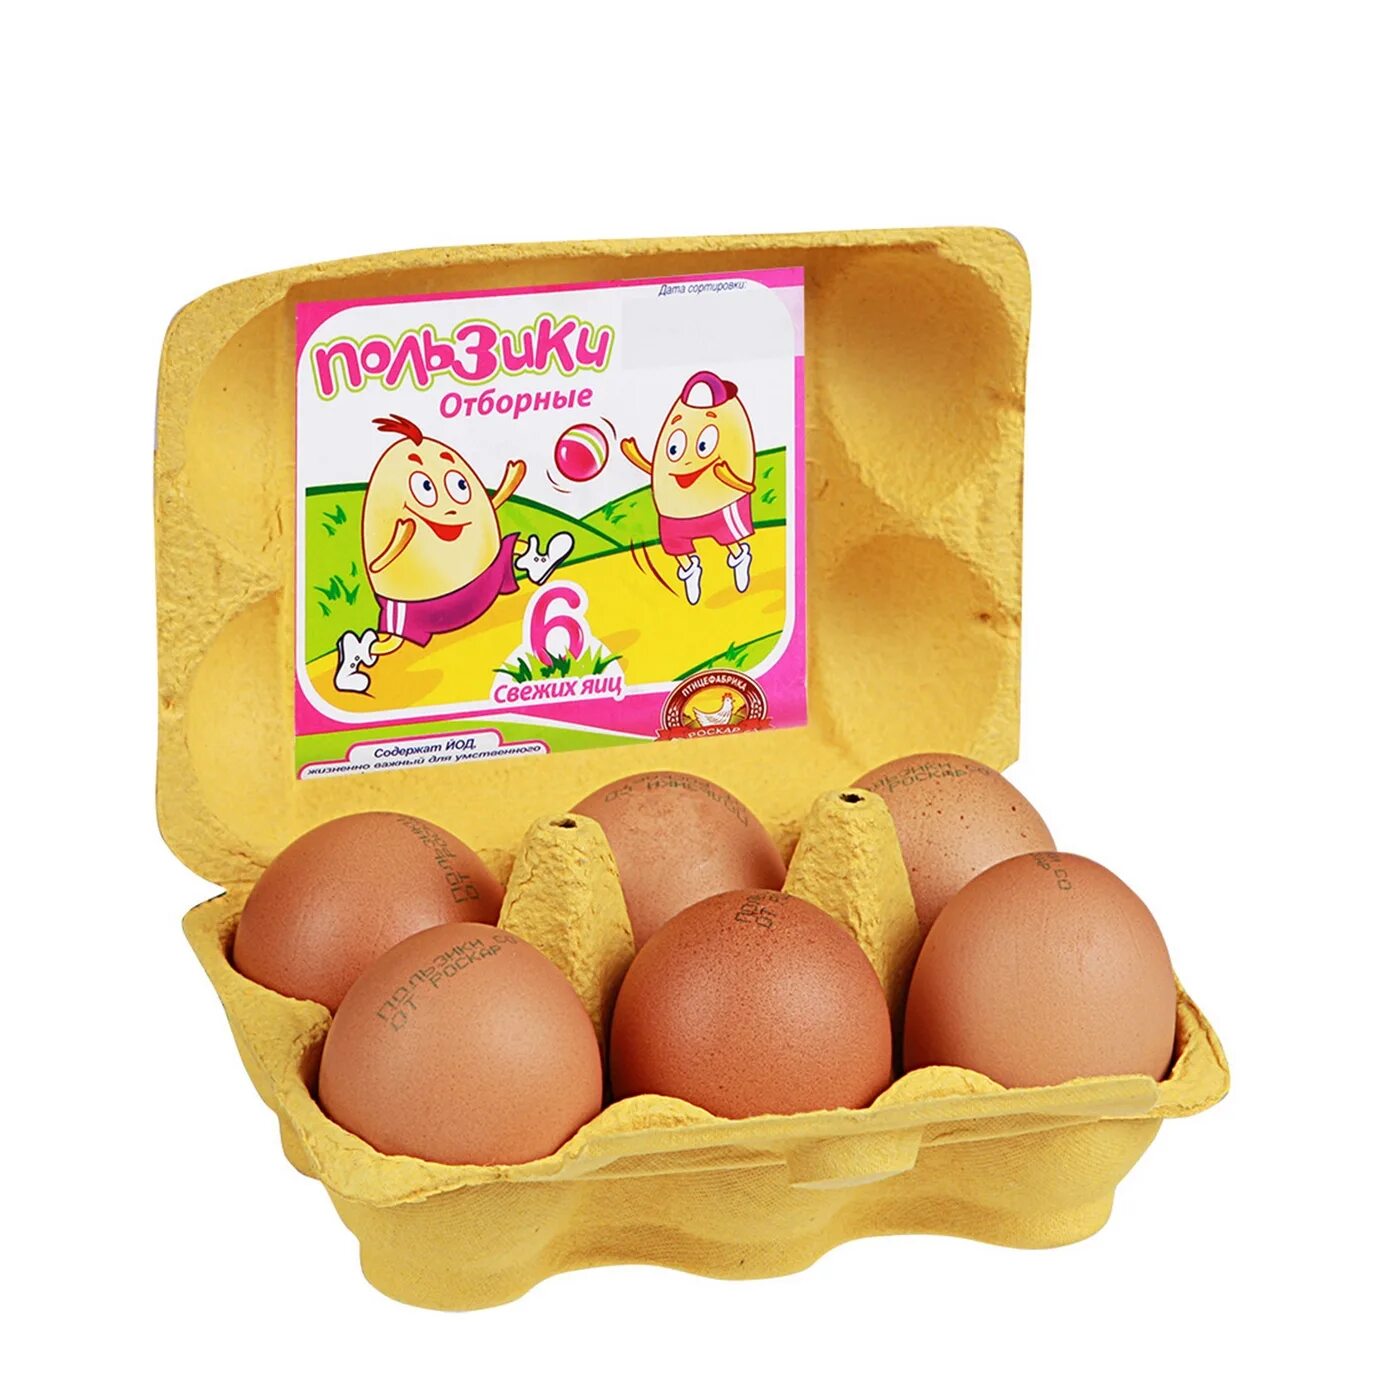 Яйца купить ставрополь. Яйца пользики. Упаковка для яиц. Яйца куриные в упаковке. Упаковка для яиц 6 штук.